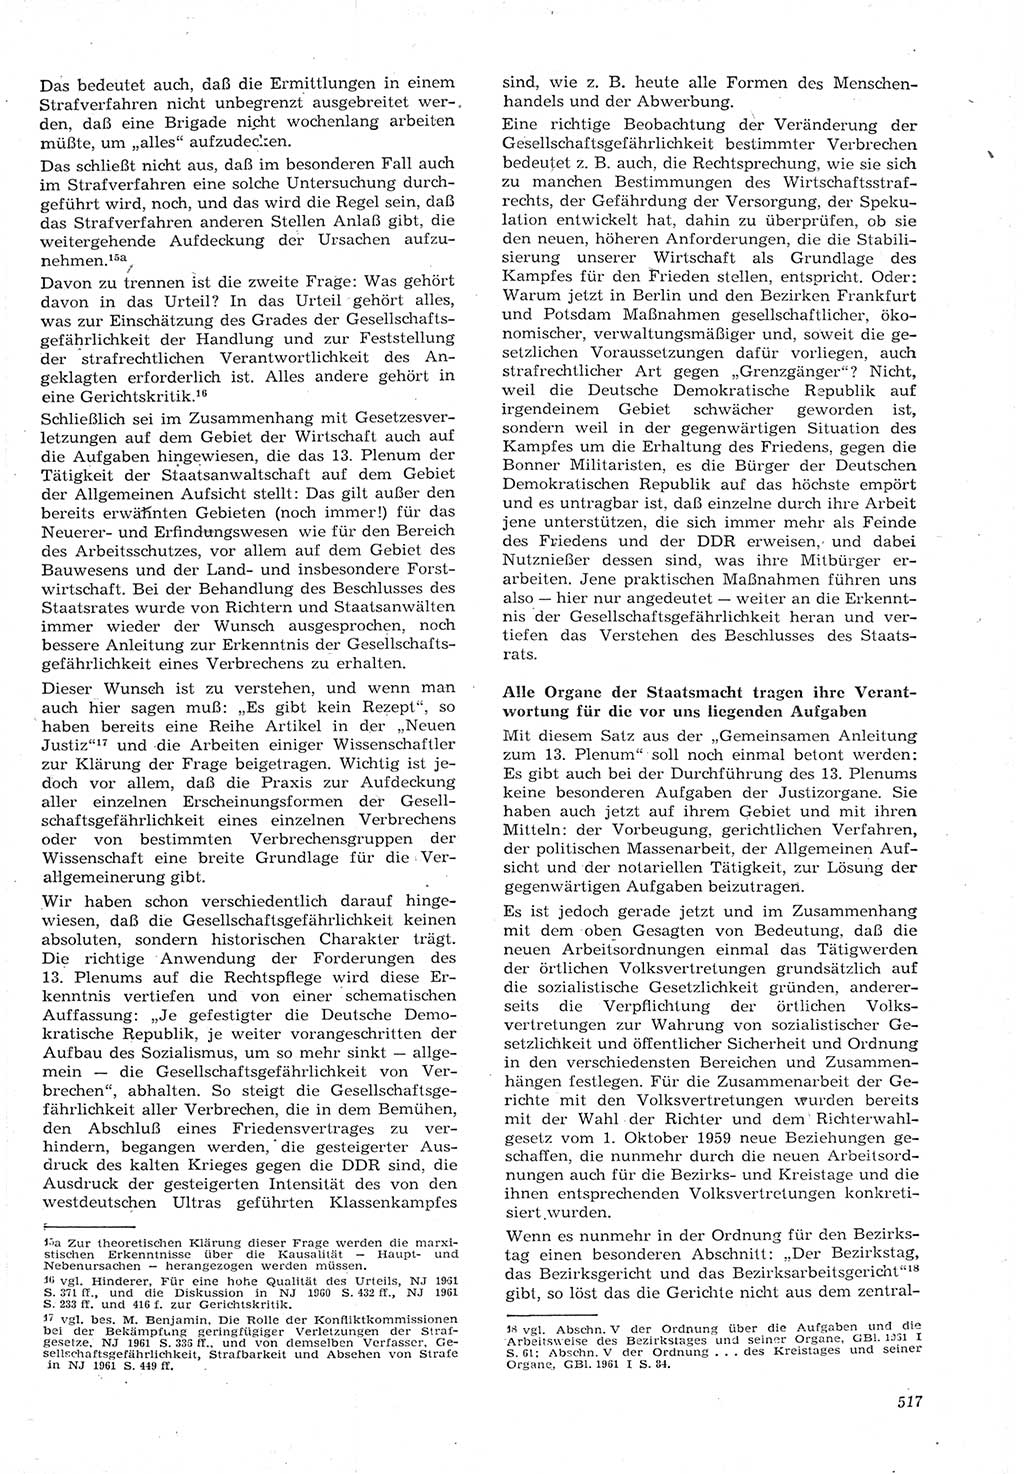 Neue Justiz (NJ), Zeitschrift für Recht und Rechtswissenschaft [Deutsche Demokratische Republik (DDR)], 15. Jahrgang 1961, Seite 517 (NJ DDR 1961, S. 517)